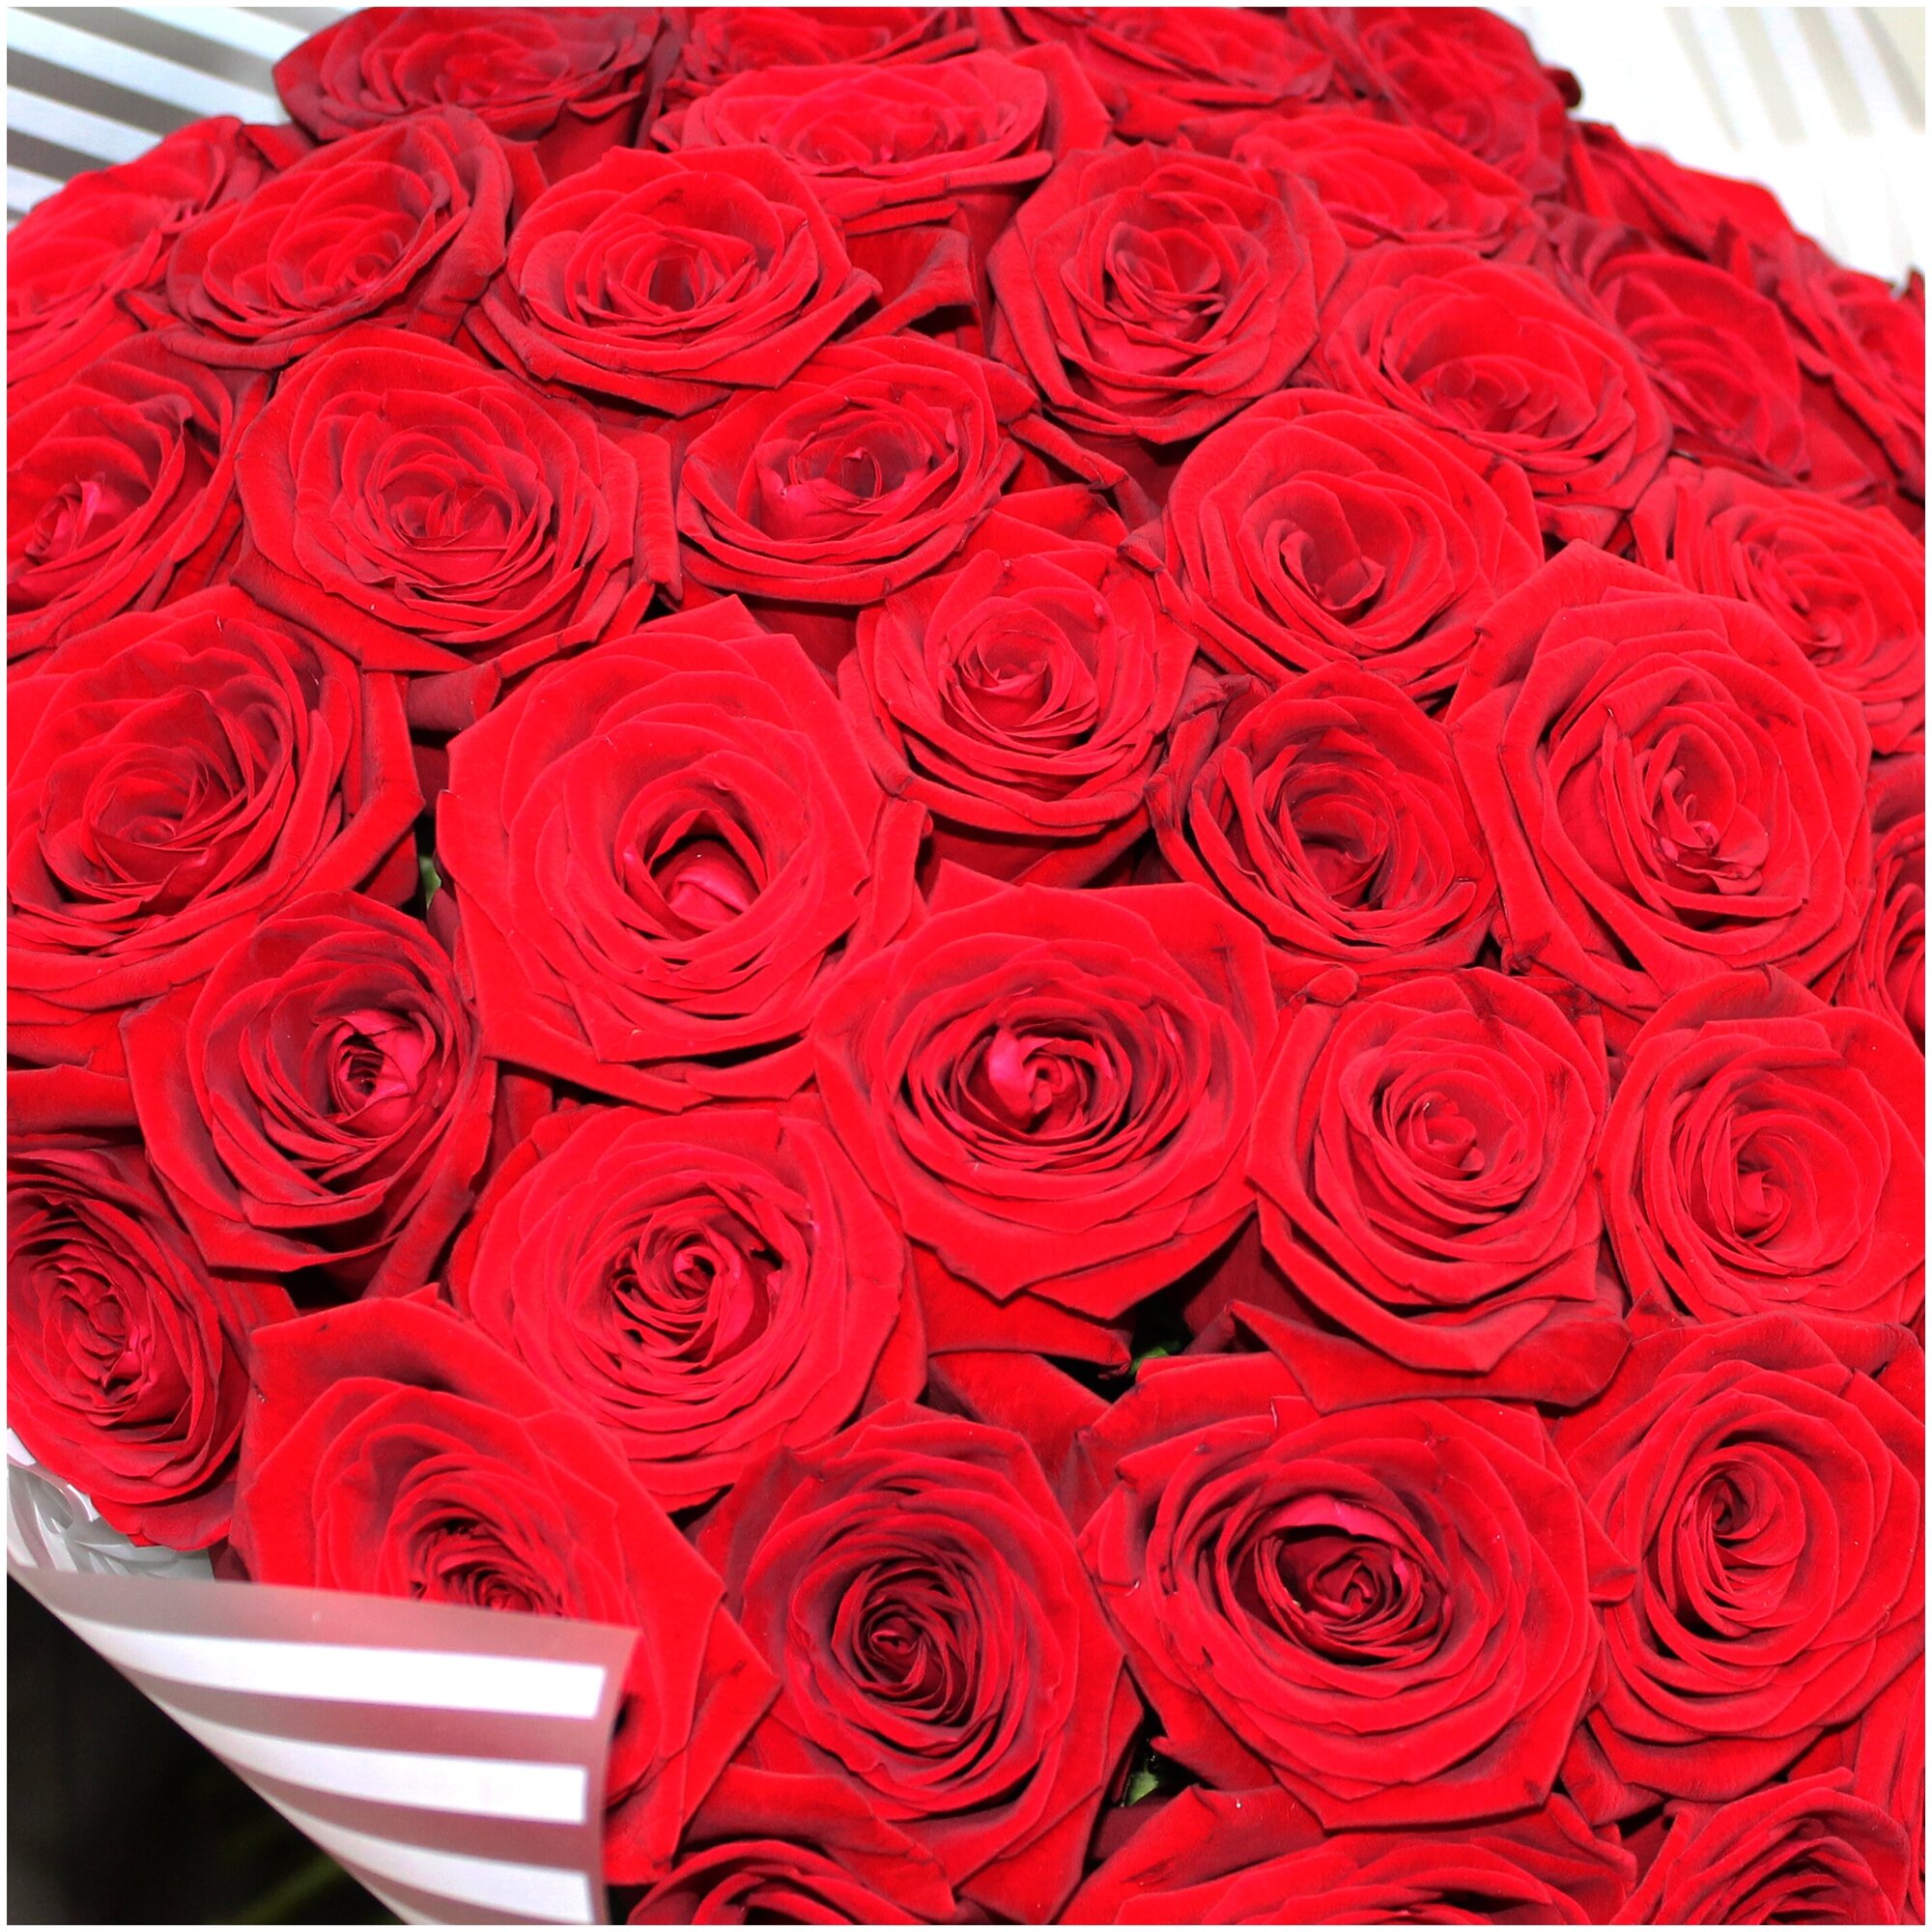 Роскошный букет из 51 розы. Букет AR0117 ALMOND ROSES